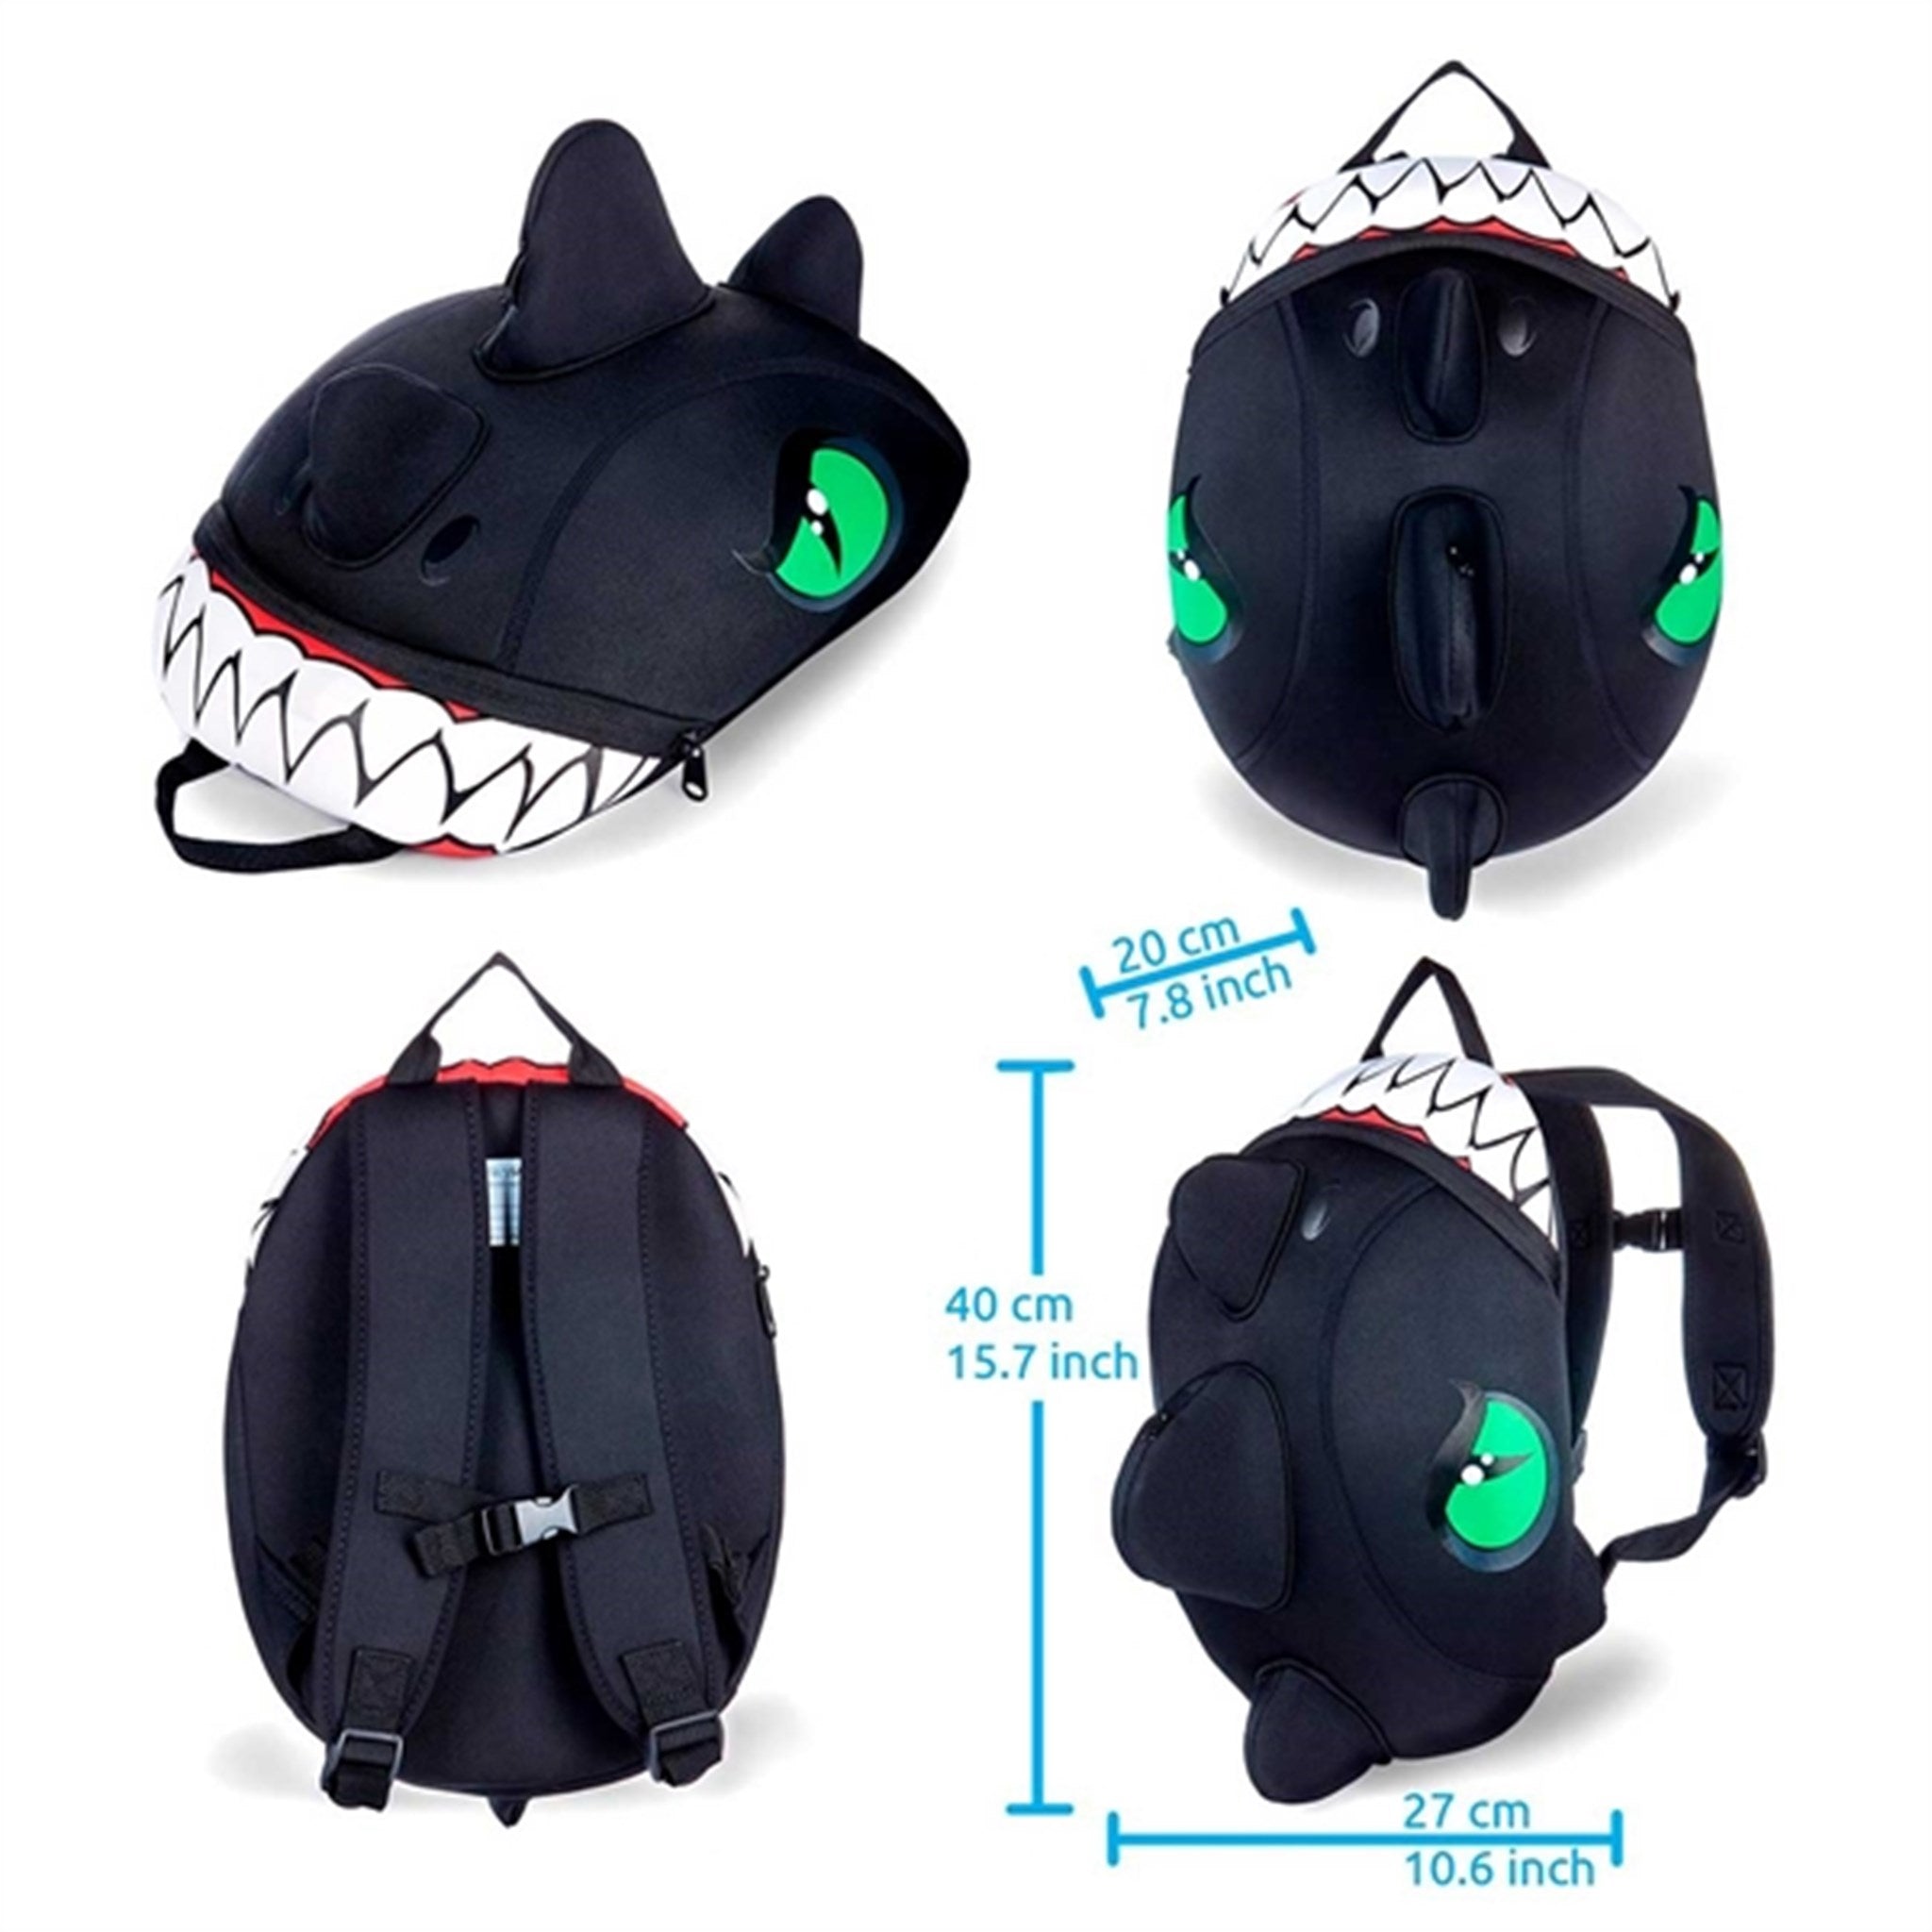 Crazy Safety Dragon Backpack Black 2